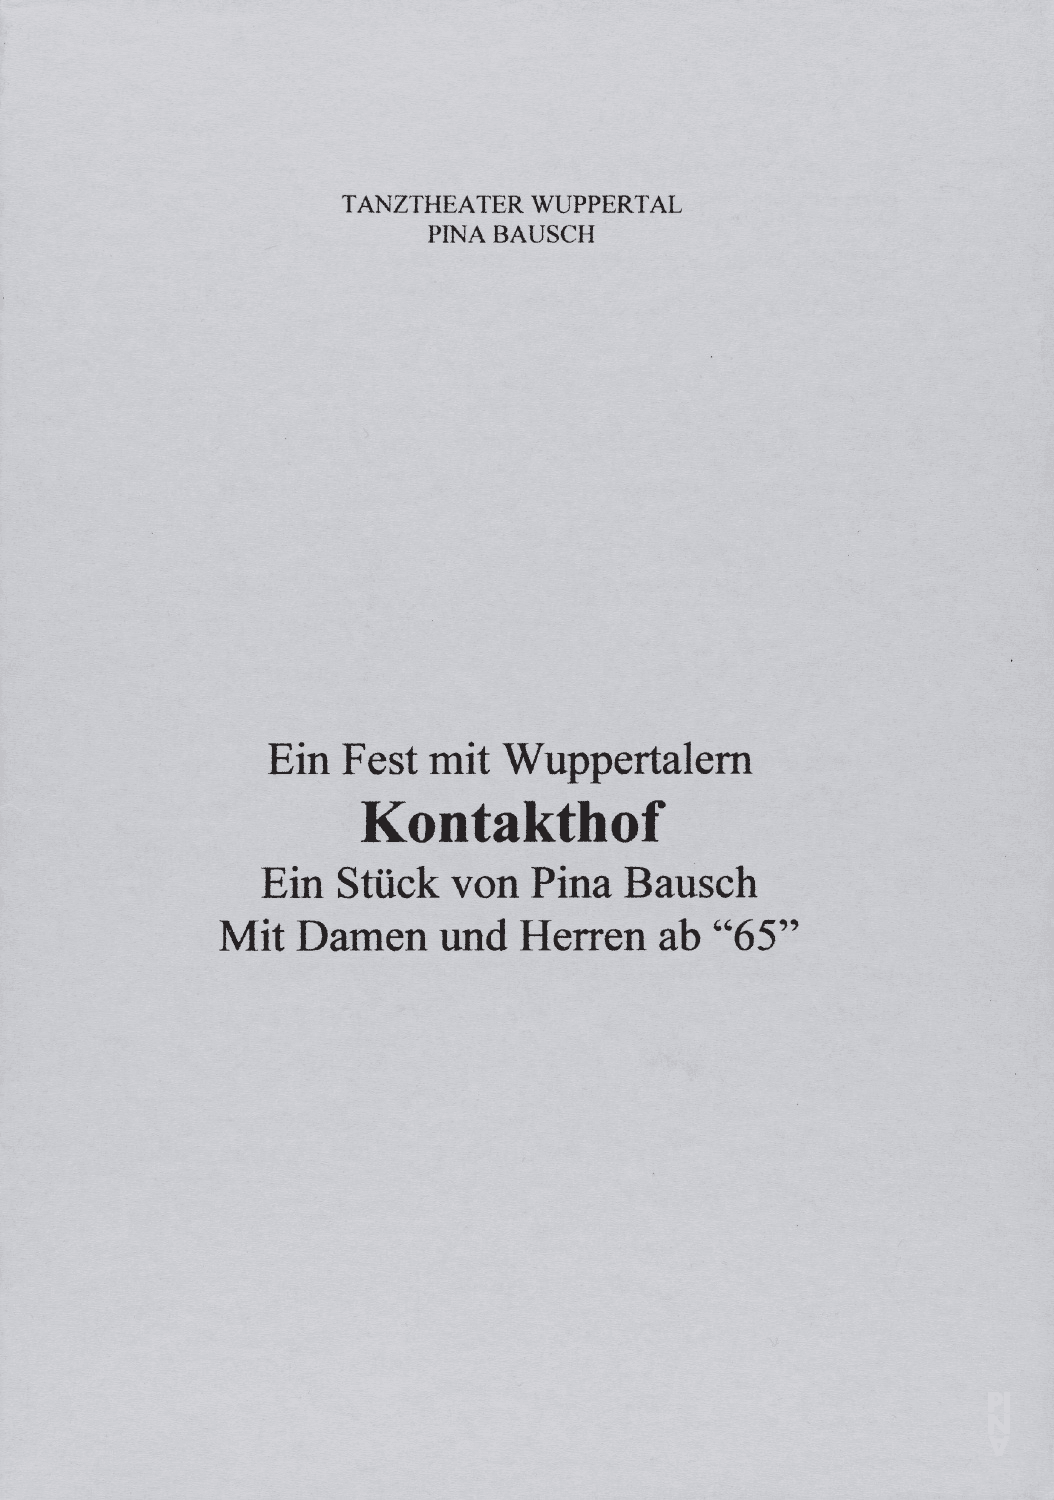 Abendzettel zu „Kontakthof. Mit Damen und Herren ab „65““ von Pina Bausch mit Kontakthof-Ensemble Damen und Herren ab ´65 in Wuppertal, 25.02.2000–27.02.2000